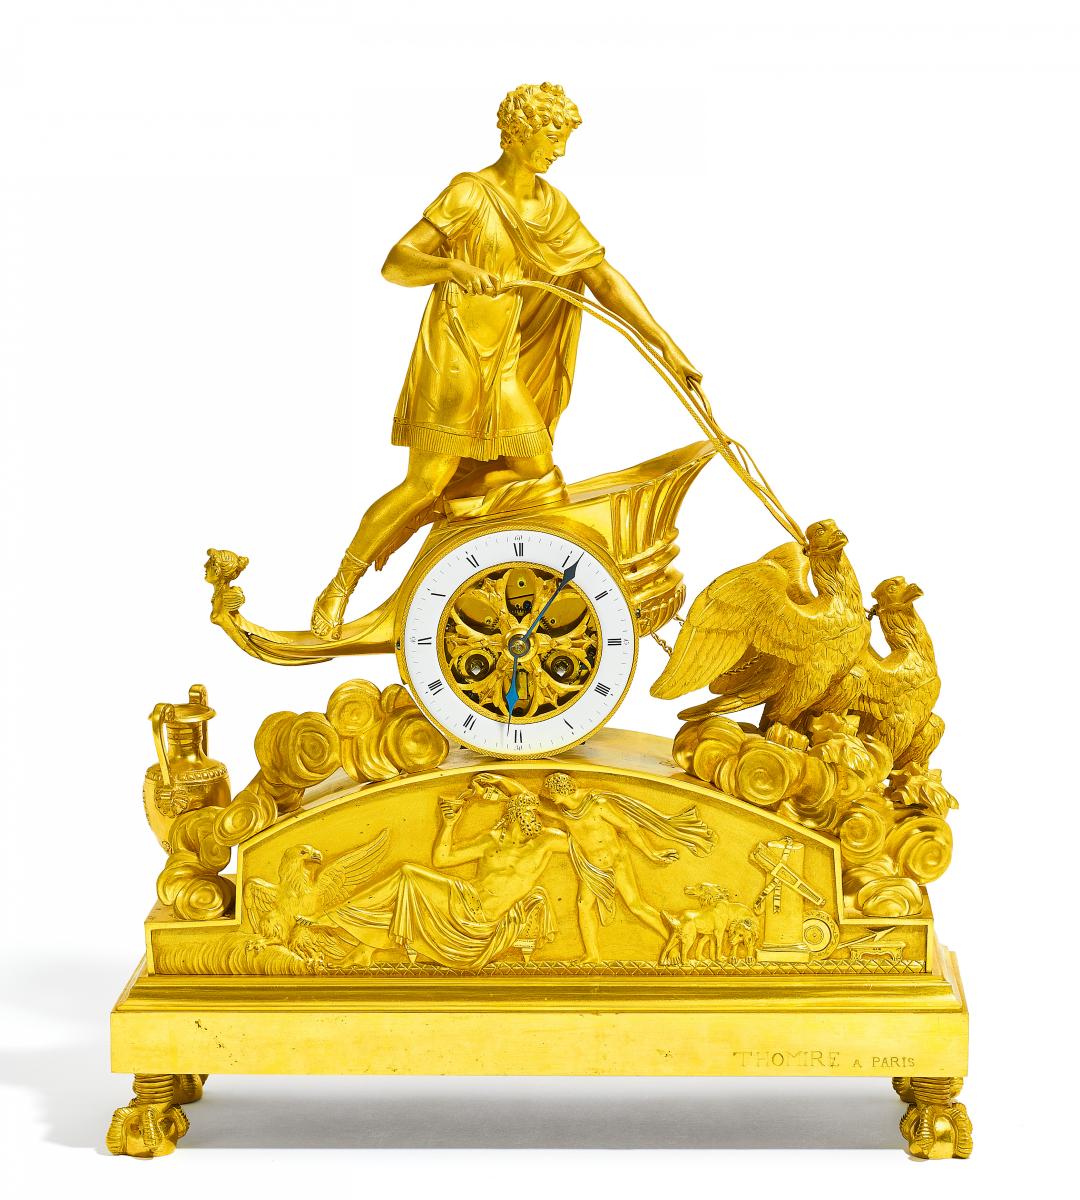 Pierre-Philippe Thomire - Seltene Pendule Ganymed im Streitwagen des Zeus, 57840-1, Van Ham Kunstauktionen